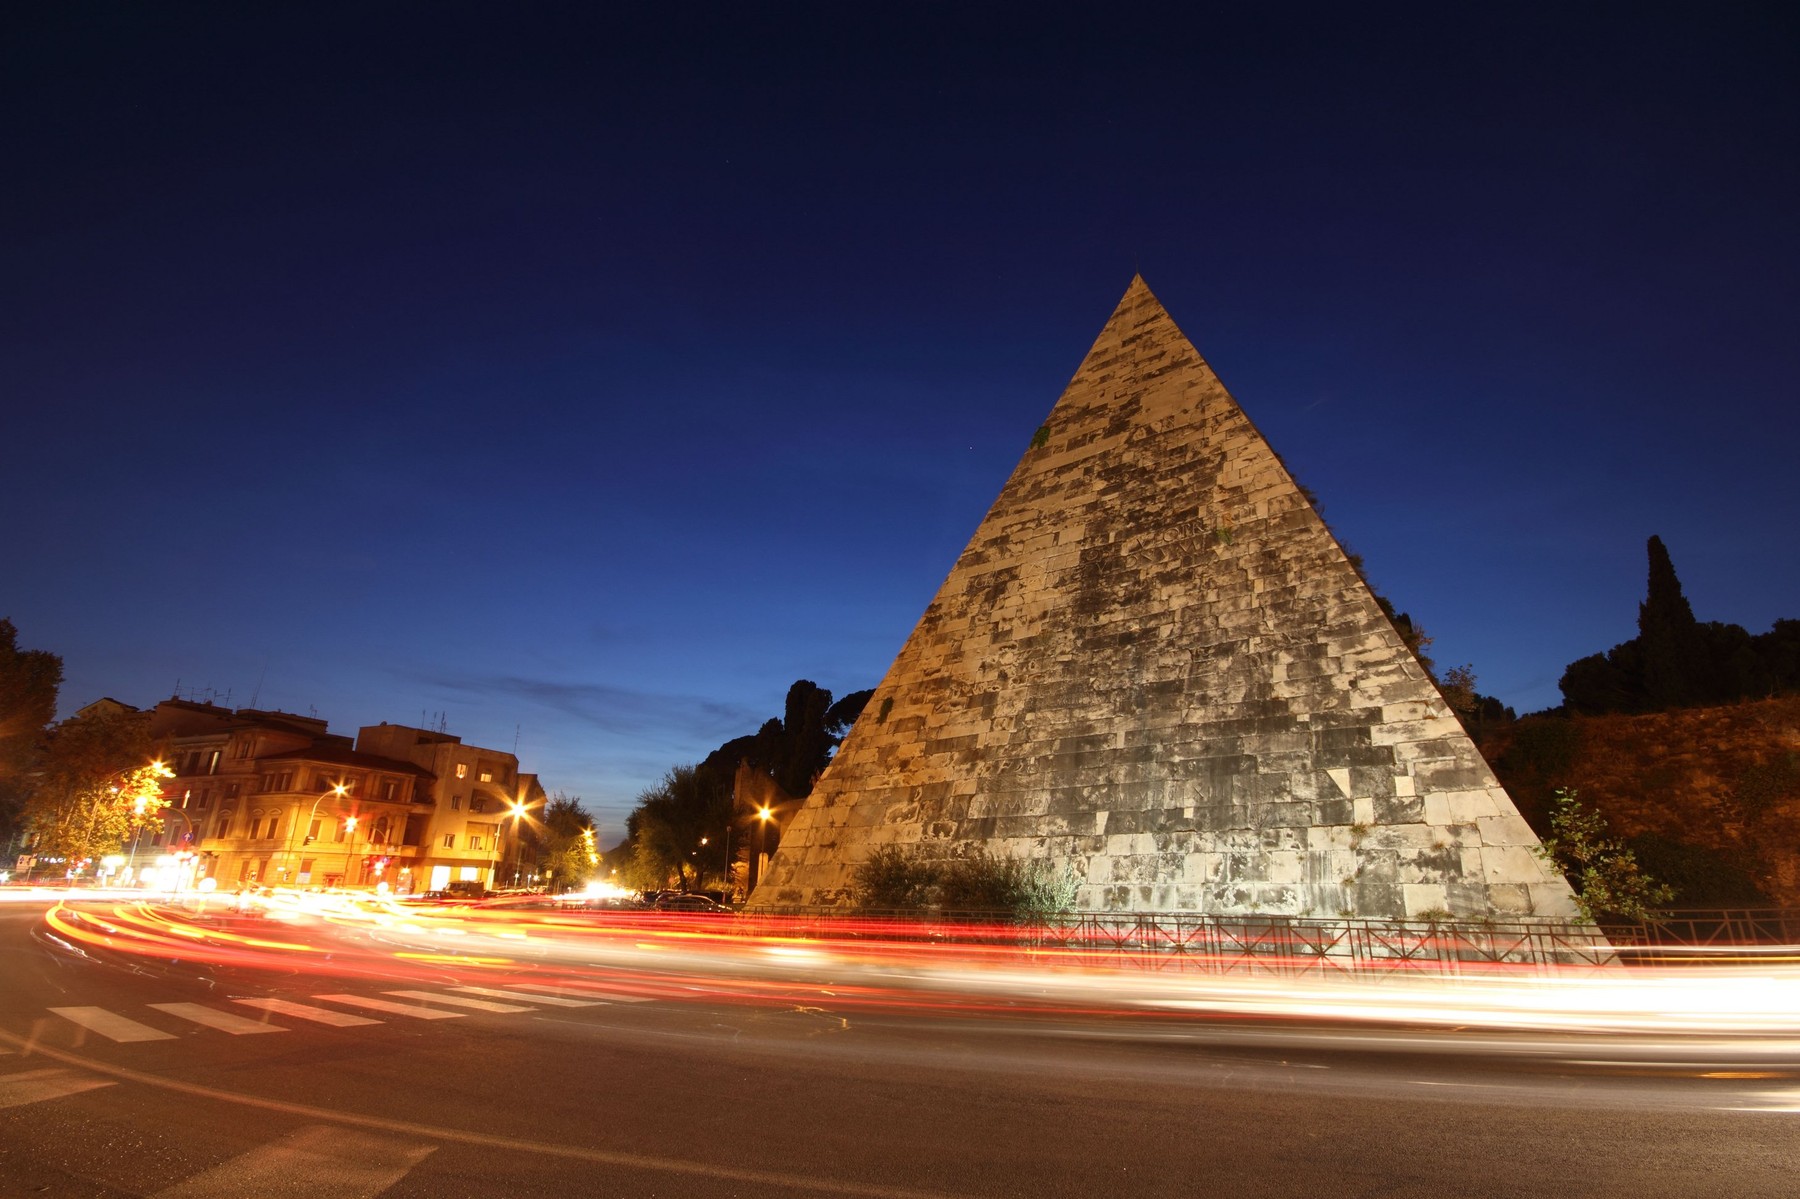 Nem várt hely rejtett el egy ősi piramist évtizedekig - Olyat találtak, amit eddig nem gondoltunk 